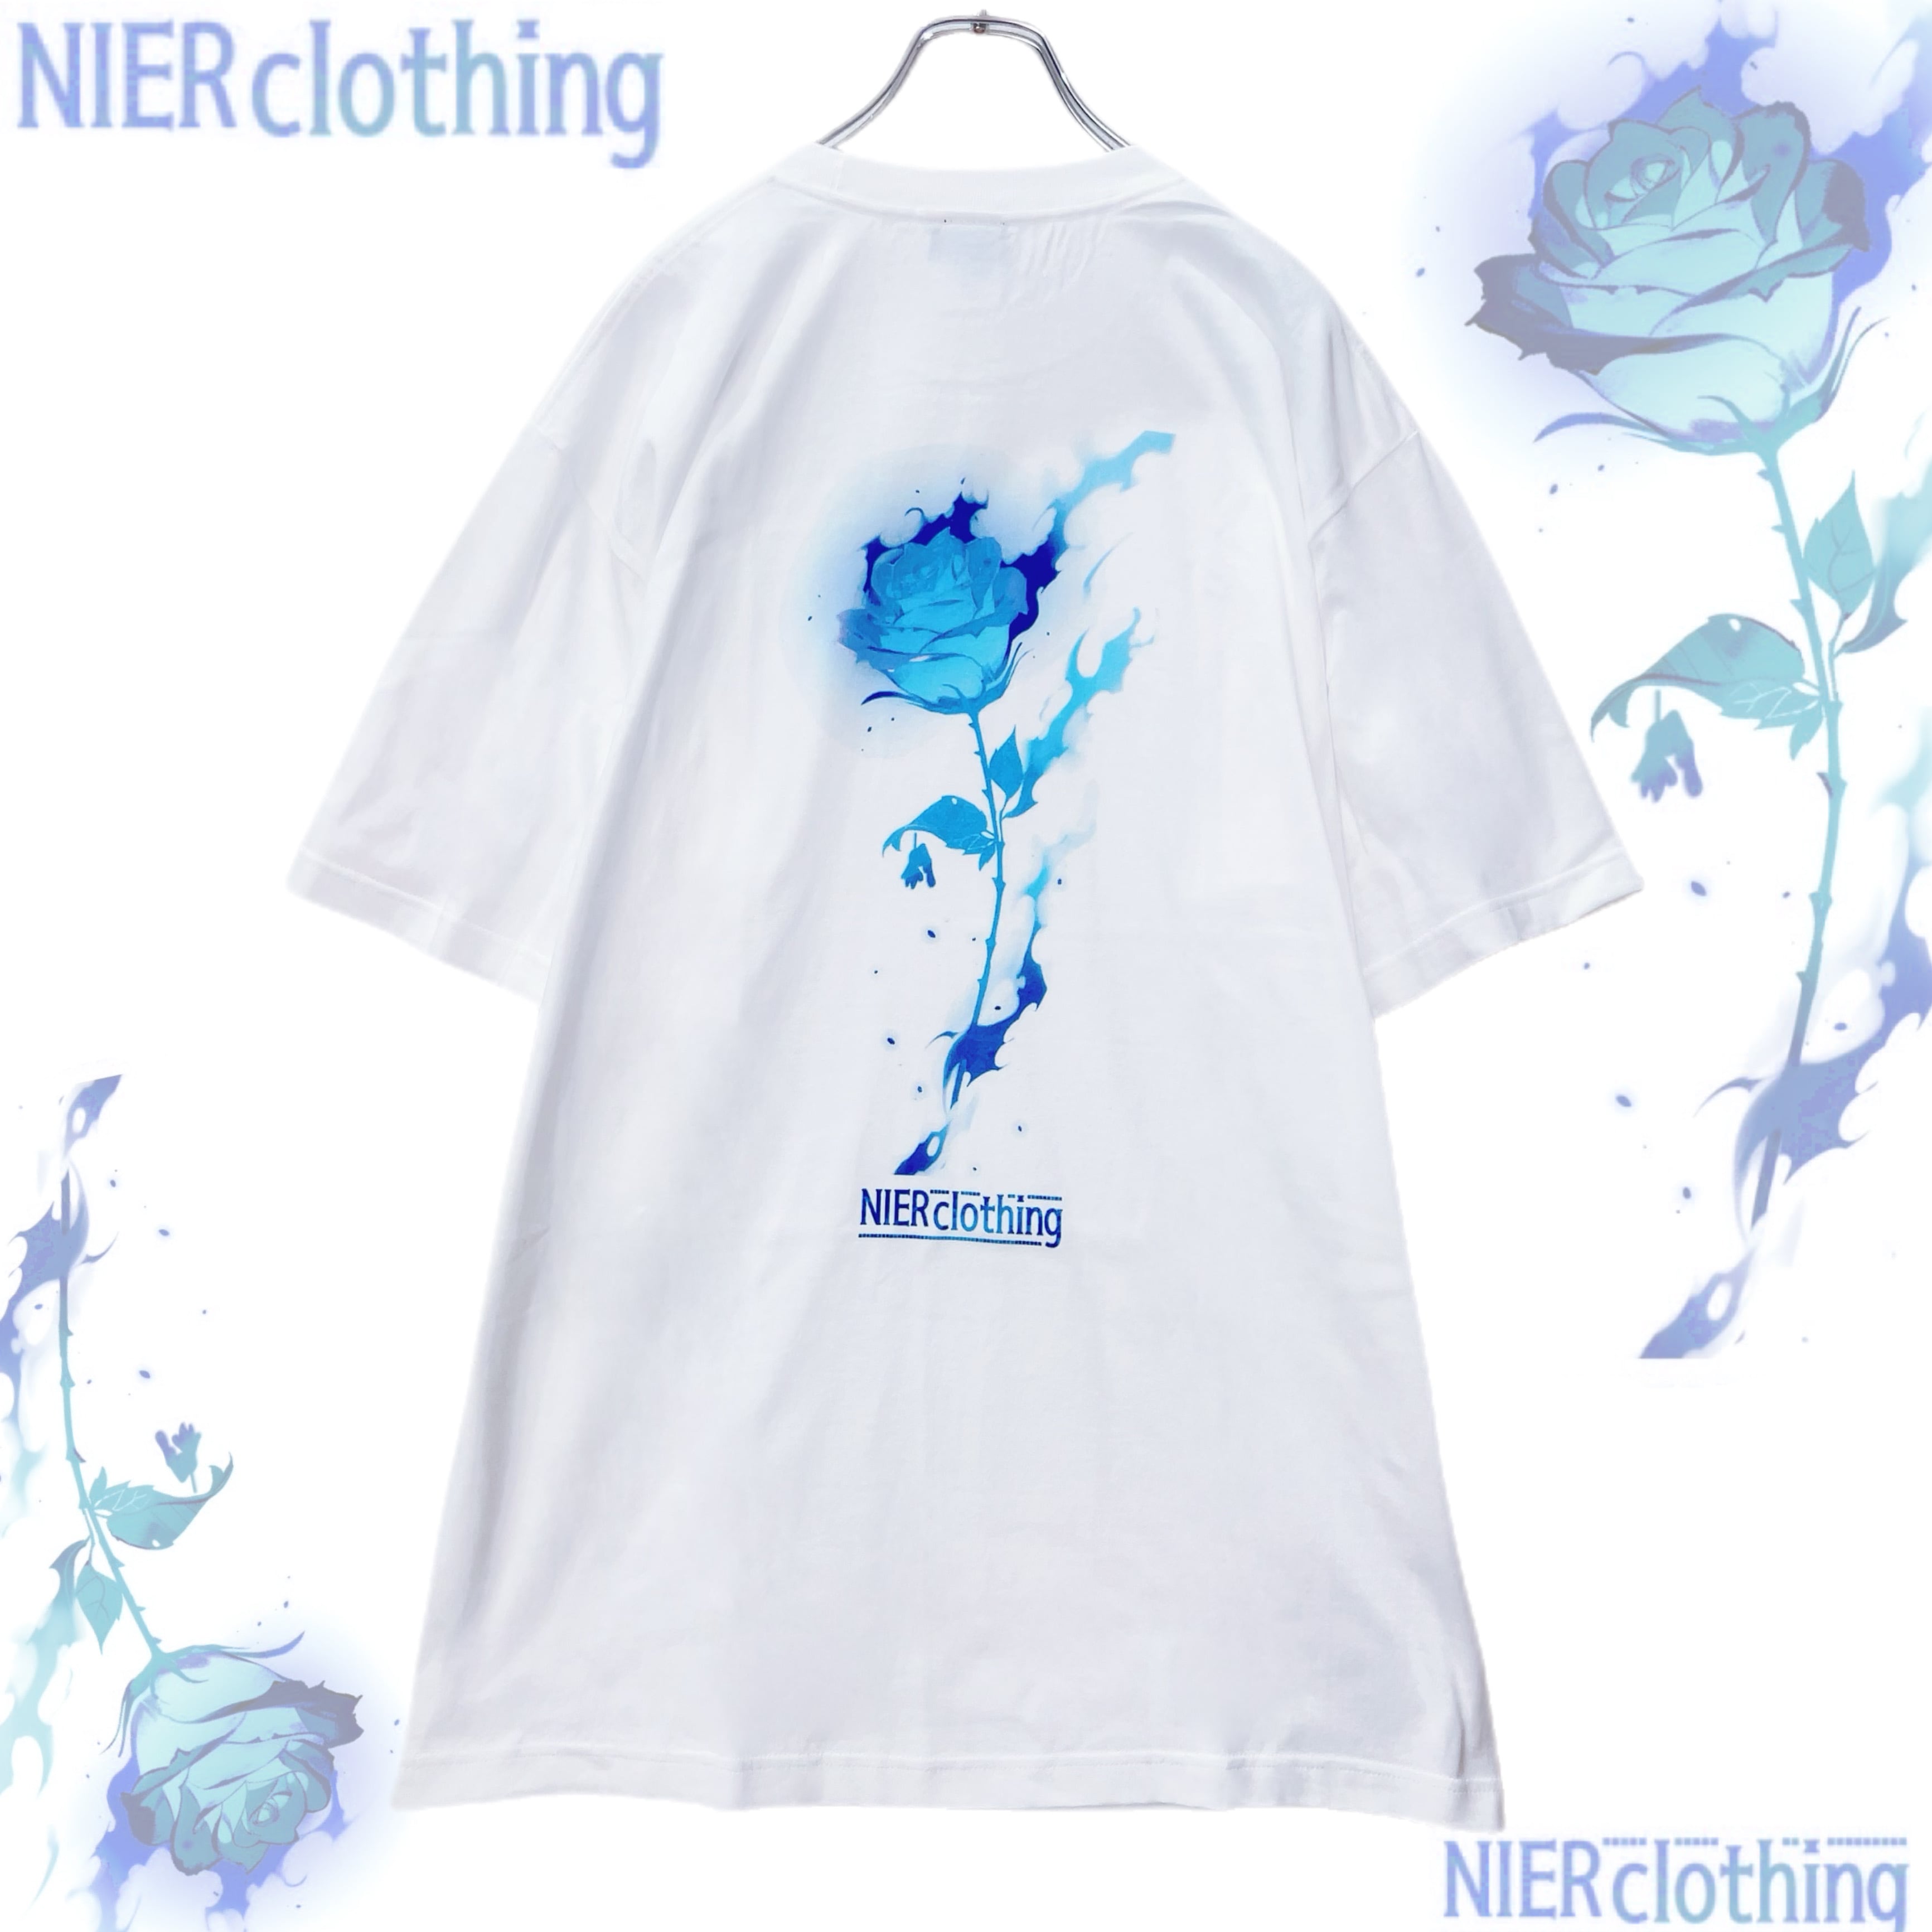 T-shirt | NIER CLOTHING